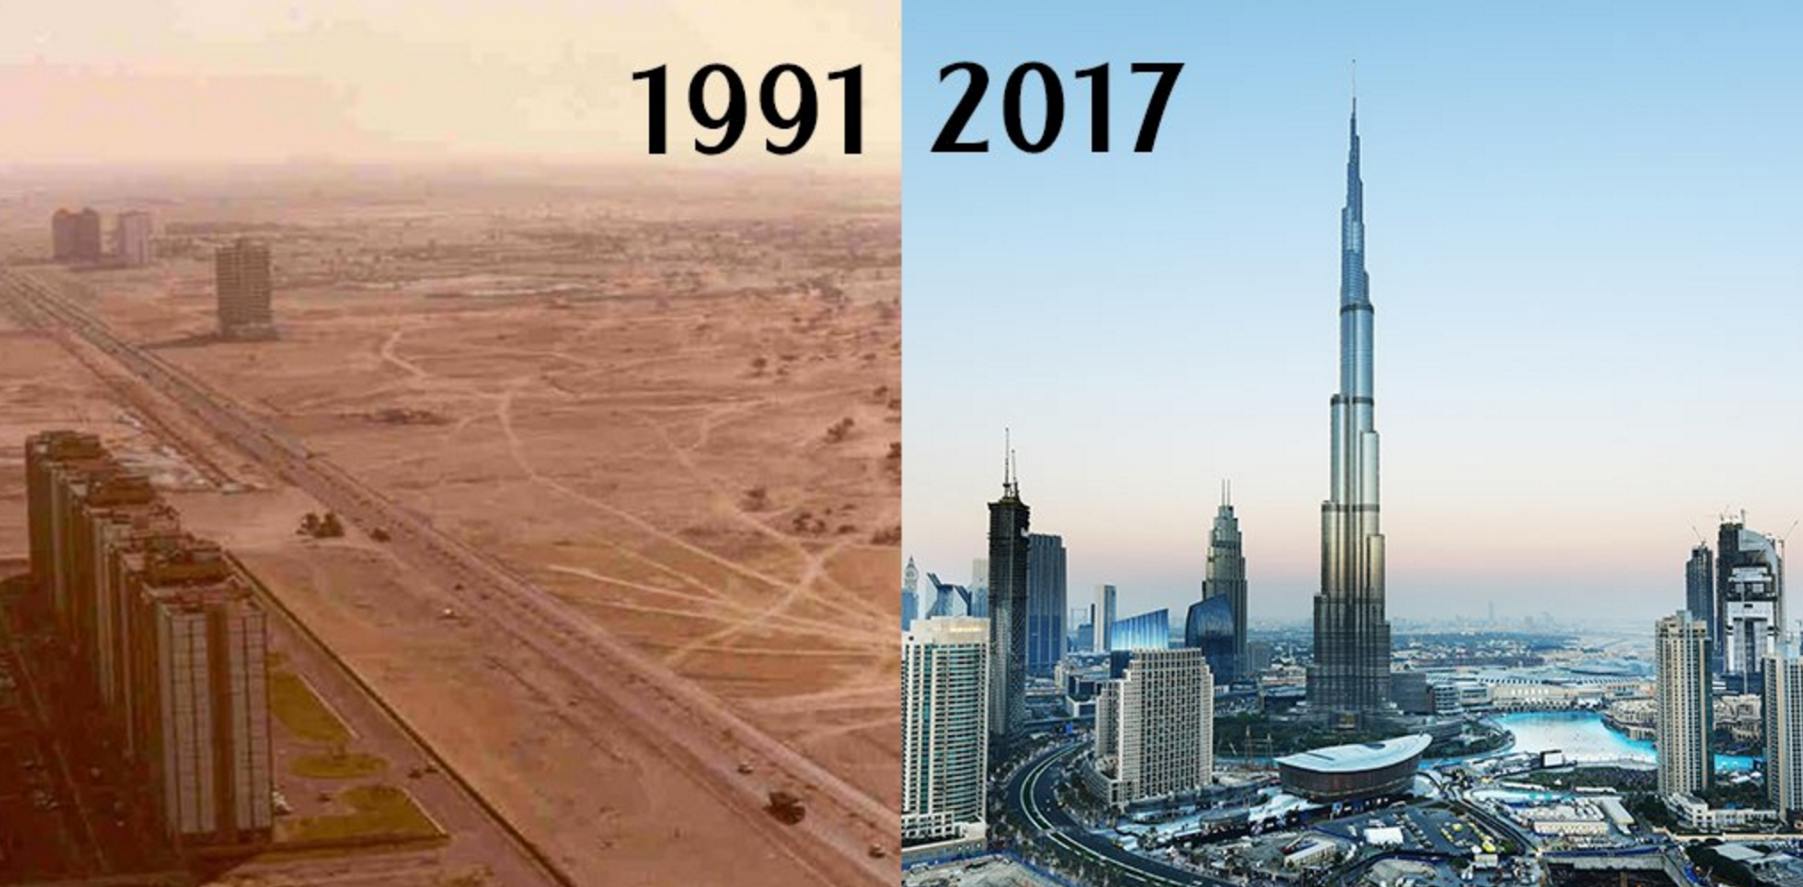 саудовская аравия 20 лет назад